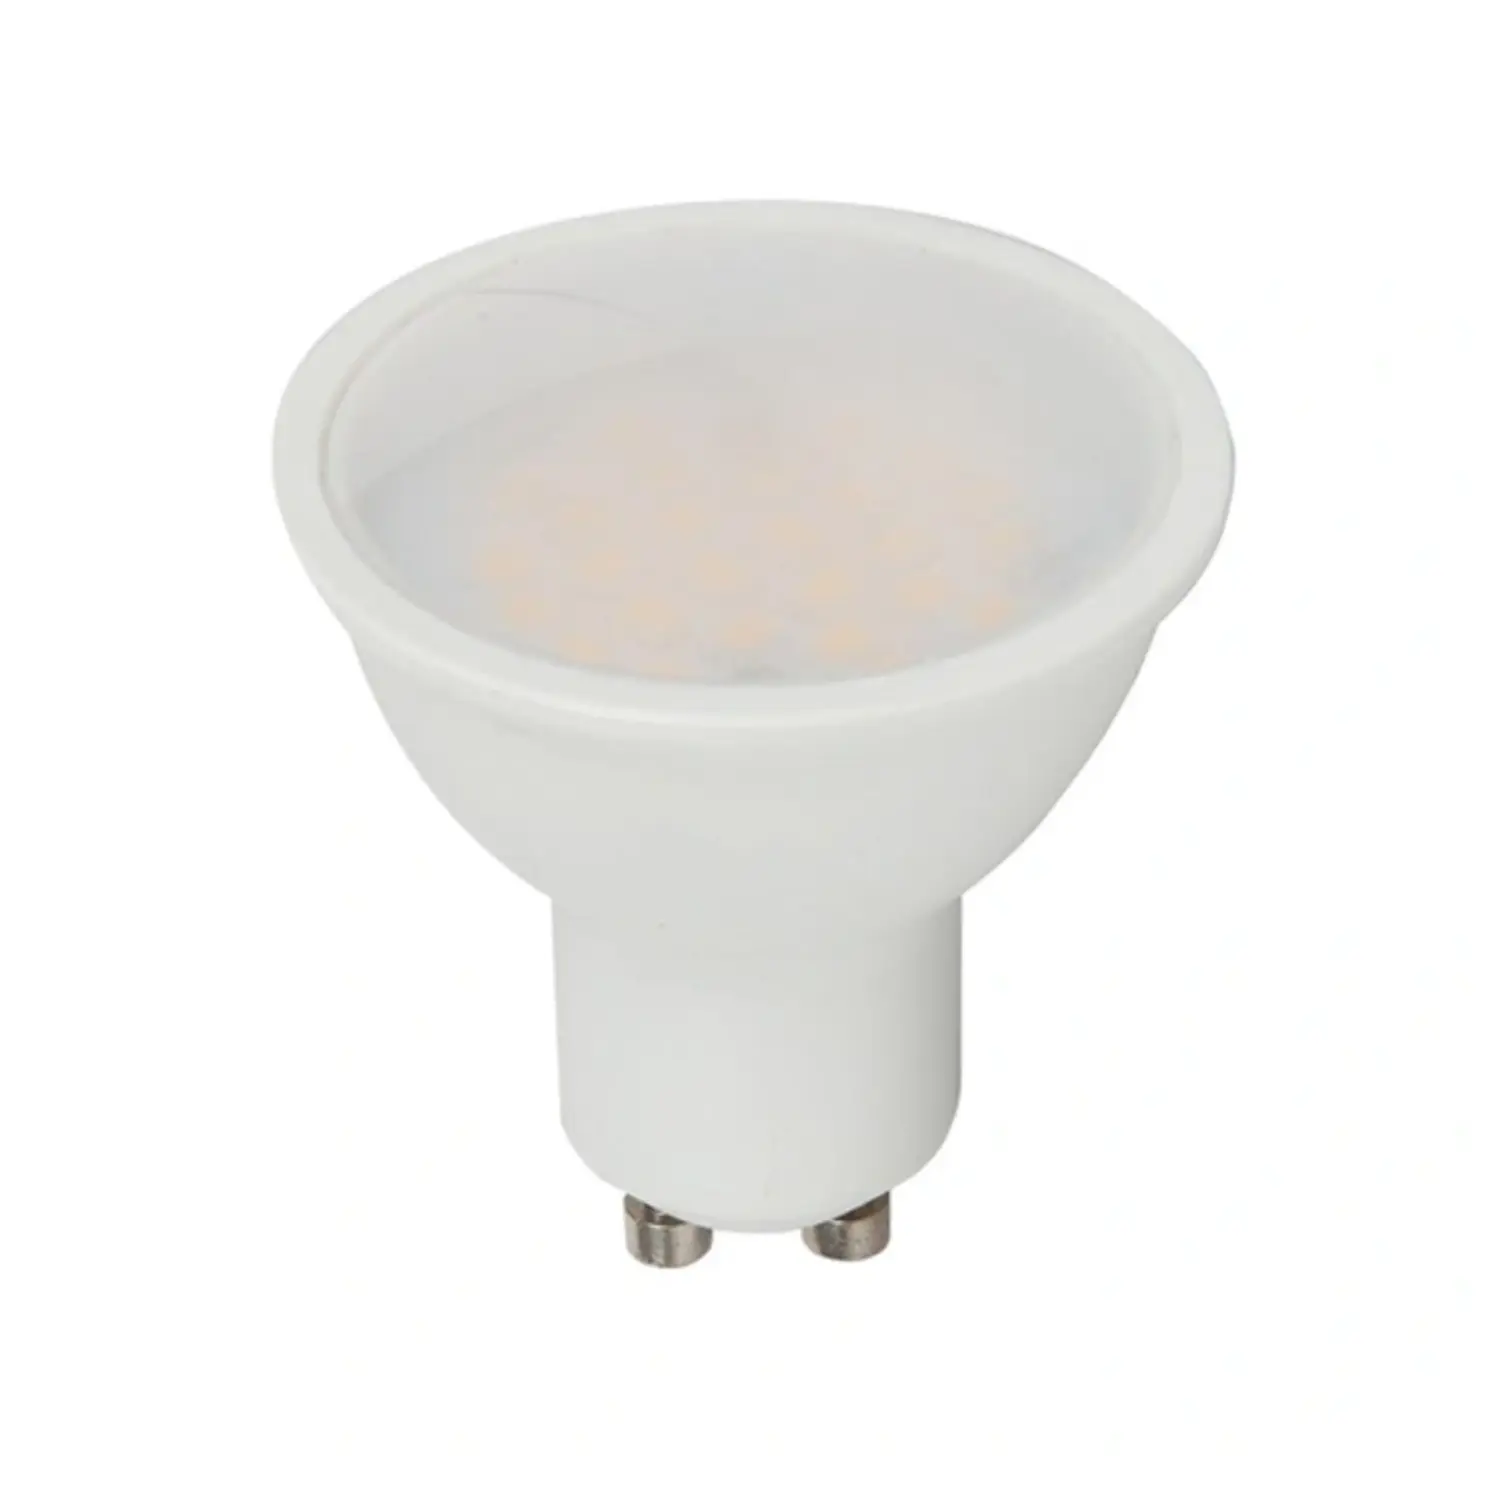 immagine del prodotto lampadina led chip samsung lampada faretto 5 watt bianco caldo